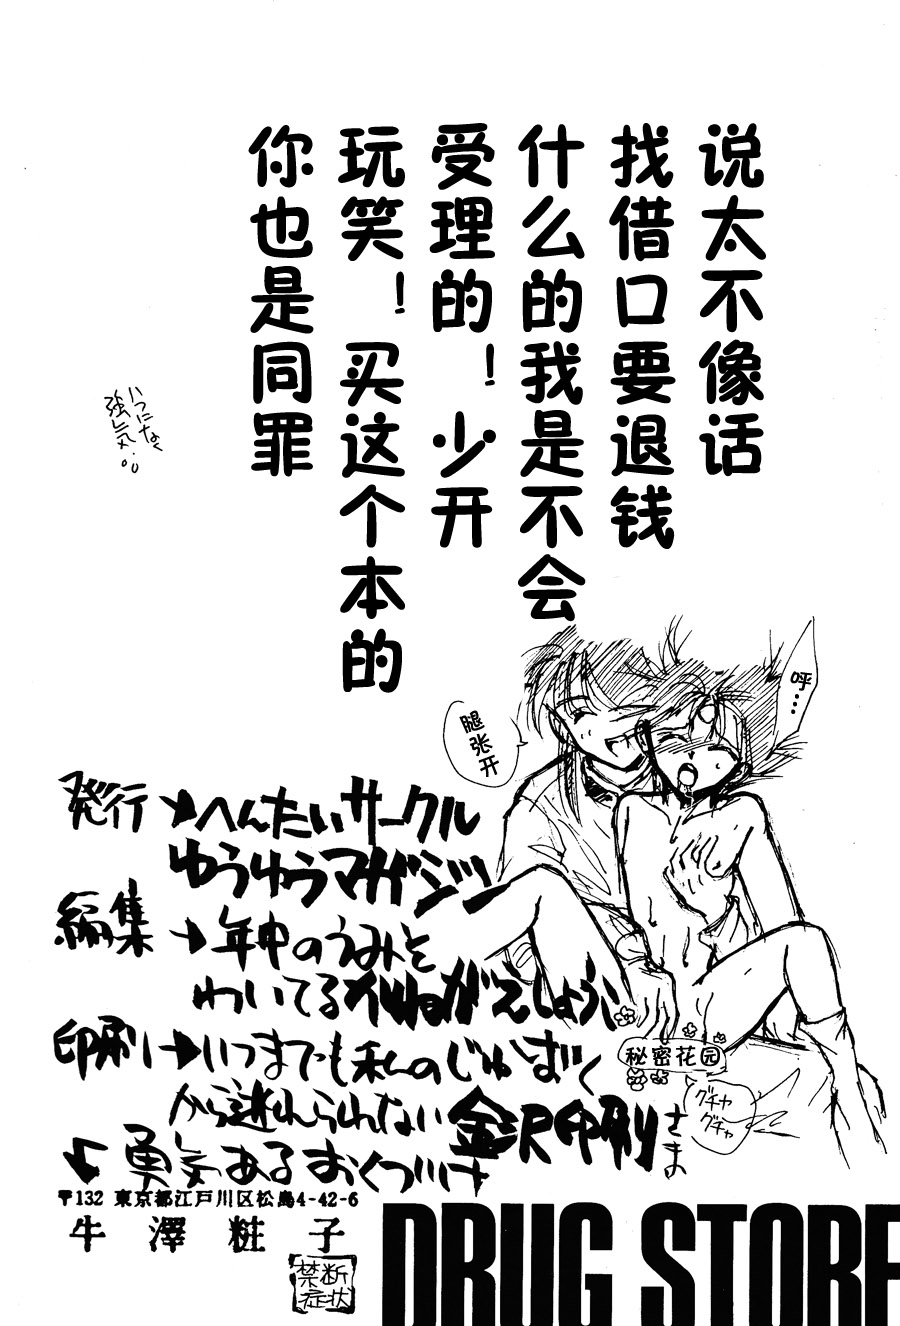 【漫画】钟ヶ江しょうこ《药店》 Img18332